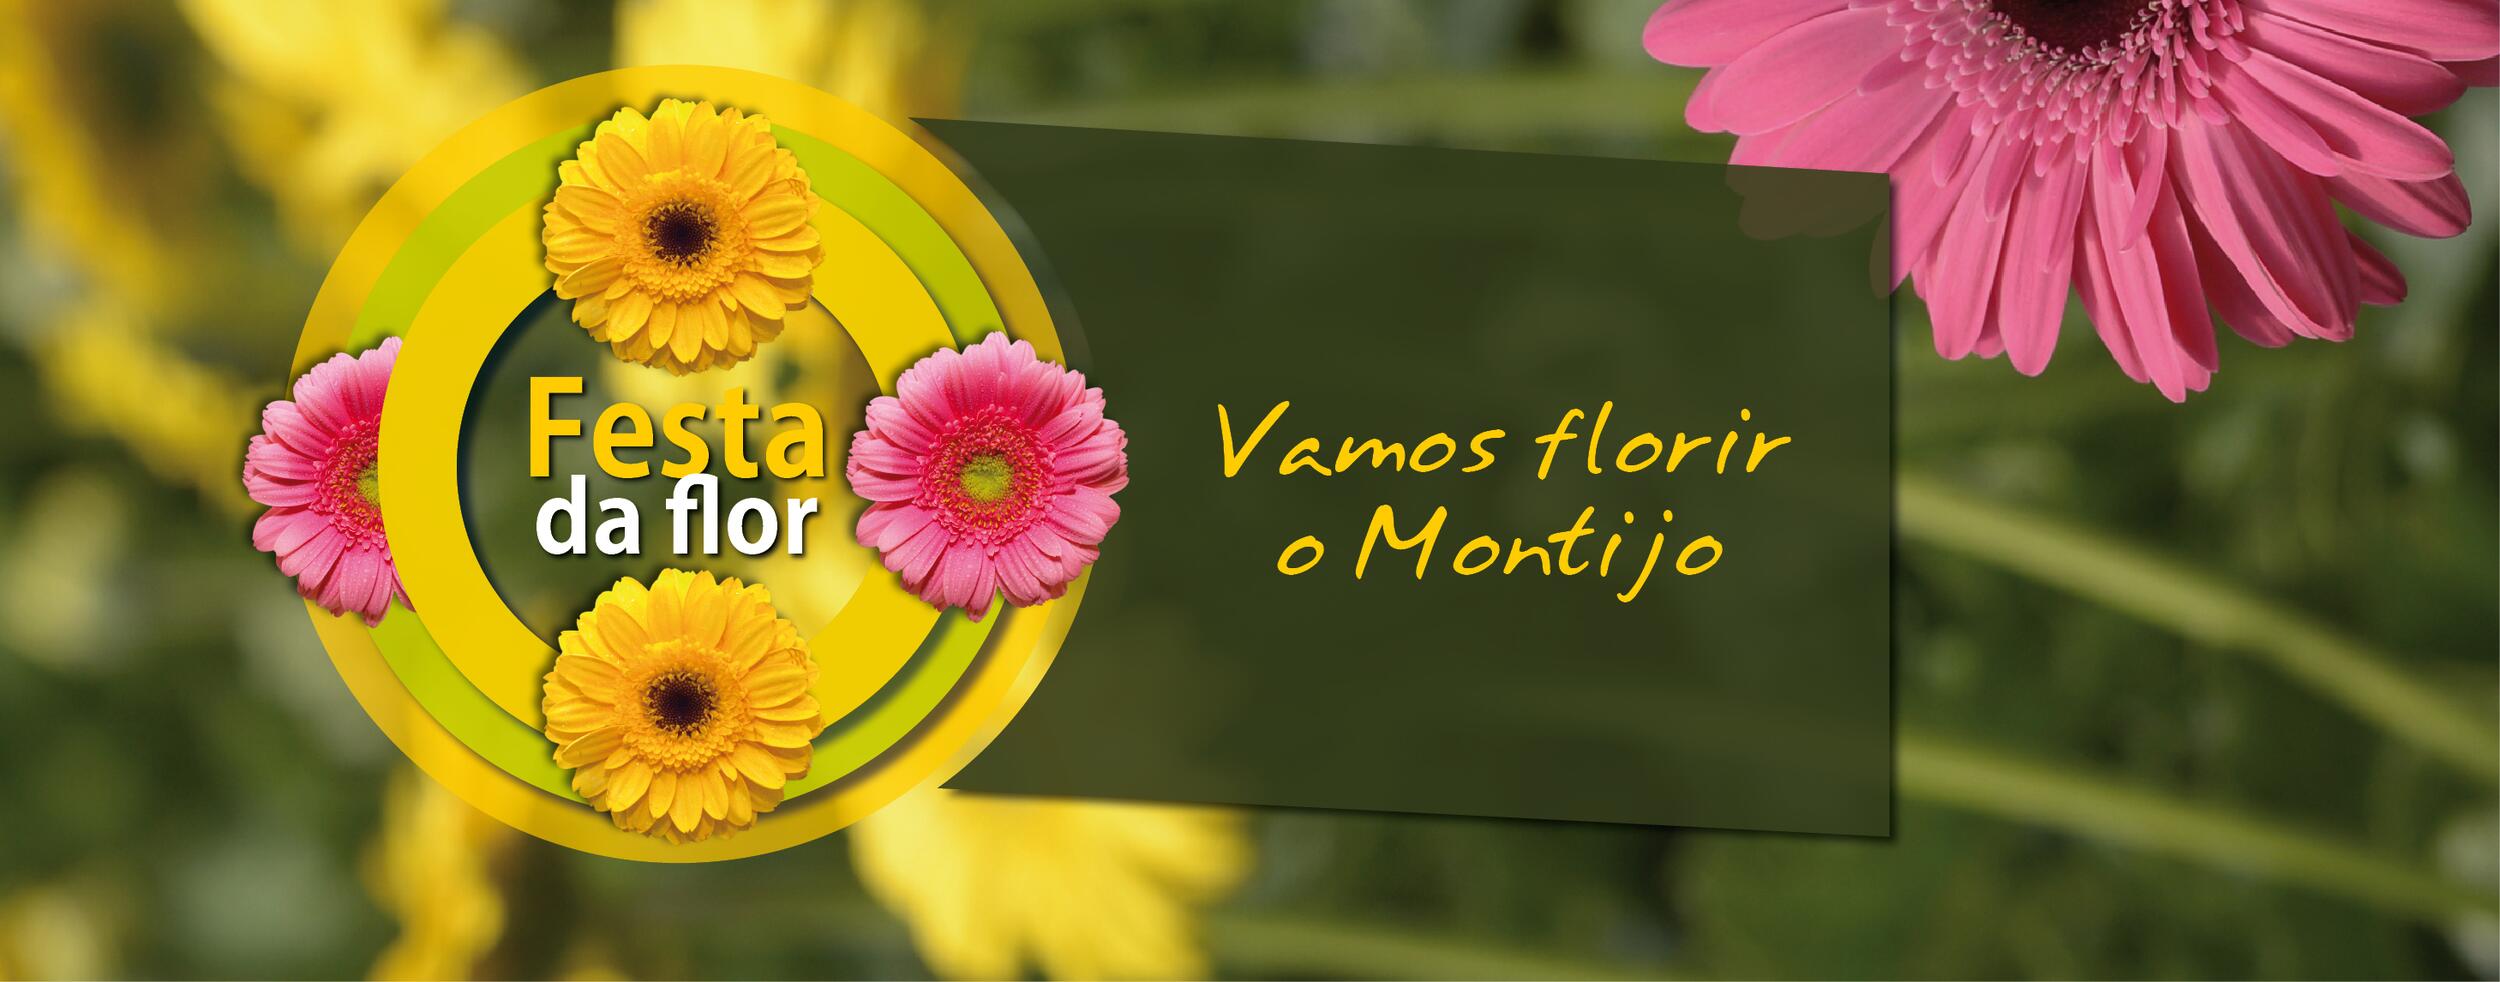 Festa da Flor na abertura do Montijo Lugar de Encontros